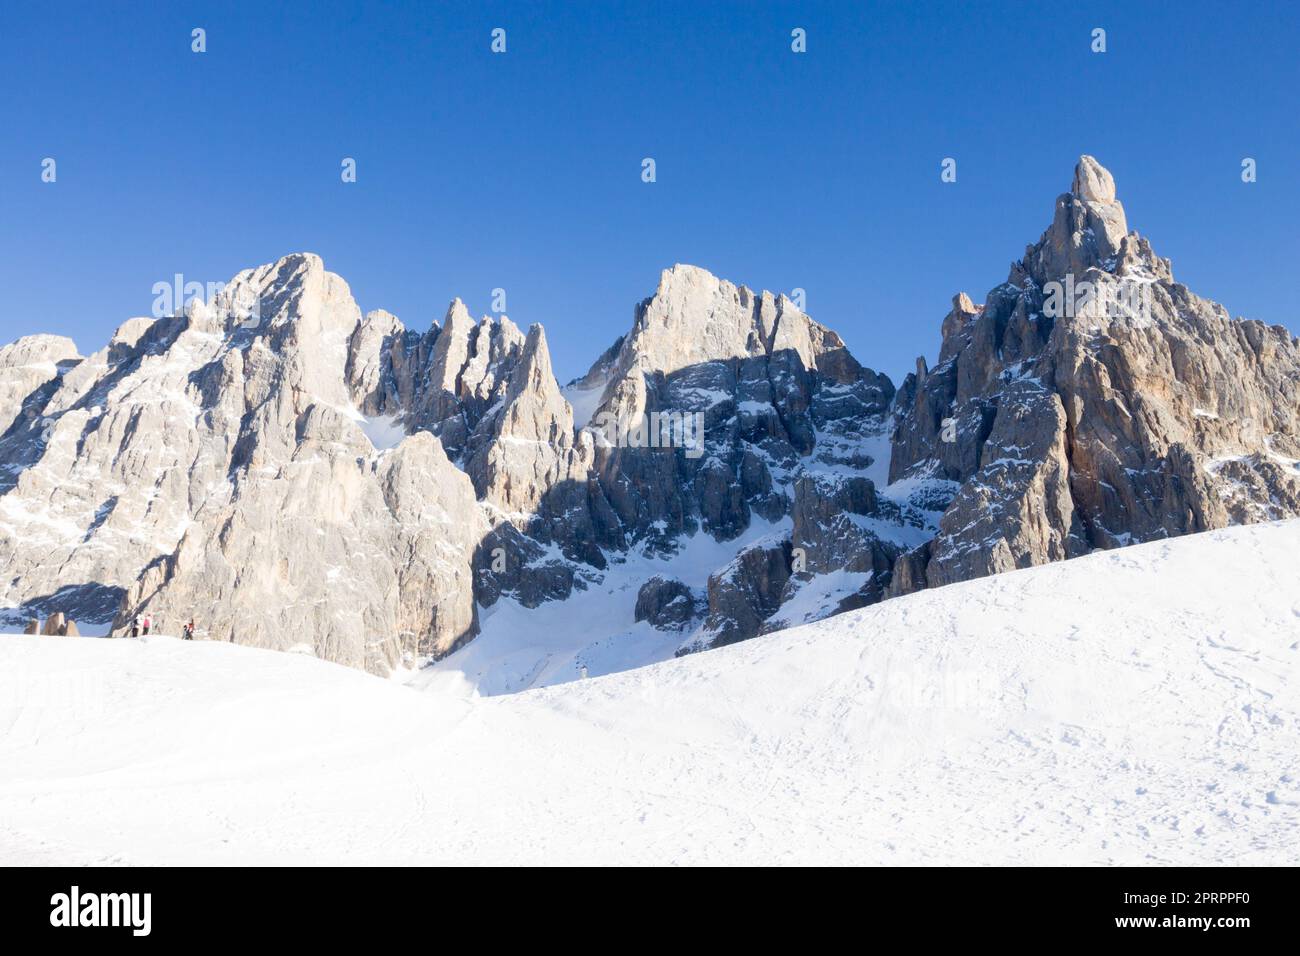 Dolomites peaks view. San Martino di Castrozza, Italy Stock Photo